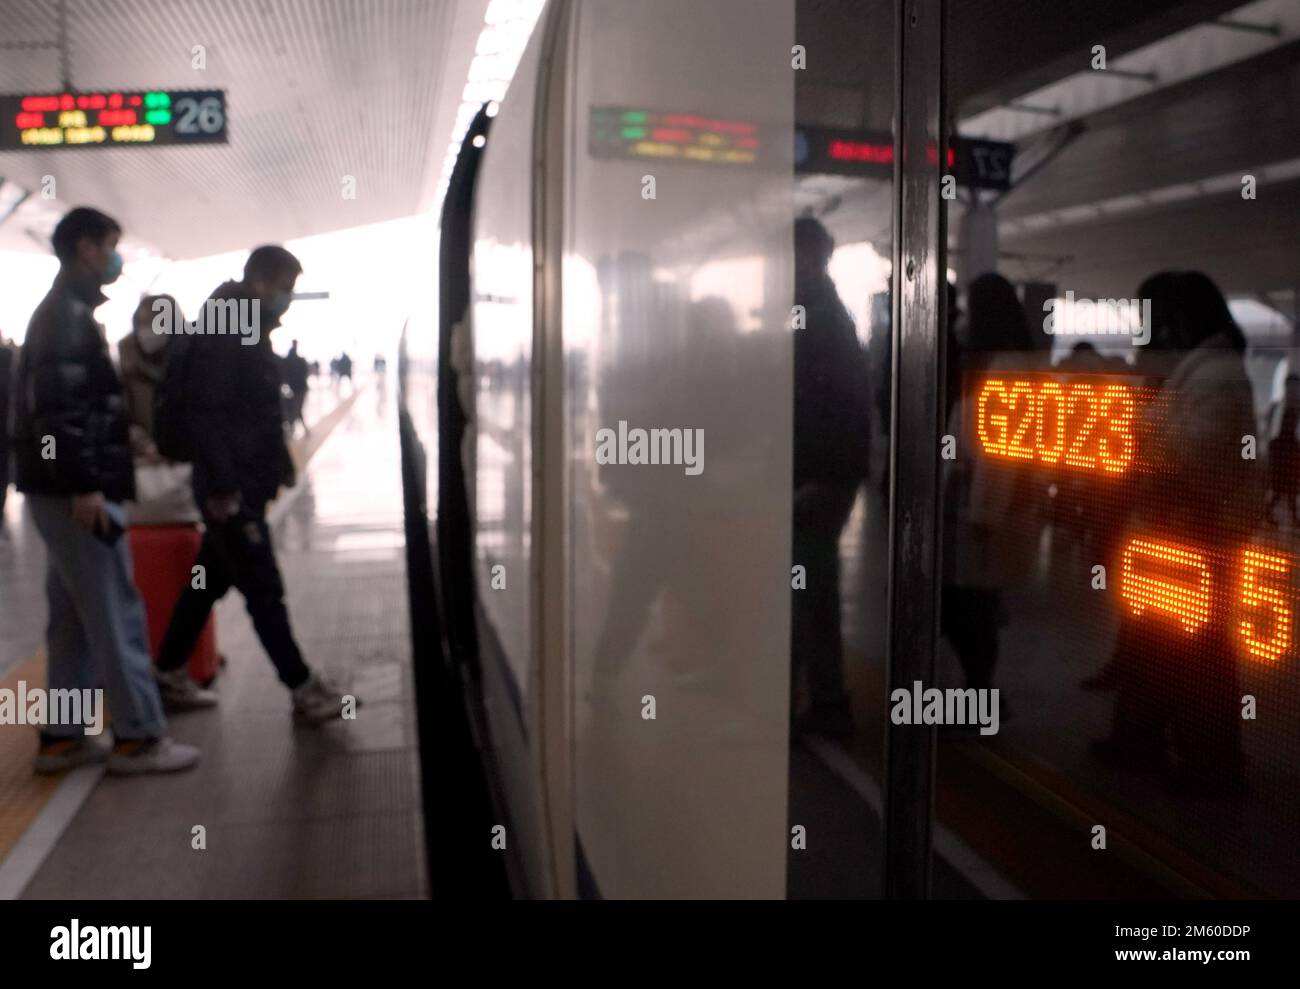 Zhengzhou, Chinas Provinz Henan. 1. Januar 2023. Passagiere steigen am Ostbahnhof Zhengzhou in Zhengzhou, Provinz Henan im Zentrum Chinas, am 1. Januar 2023 in den Zug G2023 ein. Im Zug G2023 wurden verschiedene Aktivitäten zur Feier des neuen Jahres durchgeführt, da die Anzahl des Zuges mit dem Jahr 2023 zusammenfällt. Kredit: Li An/Xinhua/Alamy Live News Stockfoto